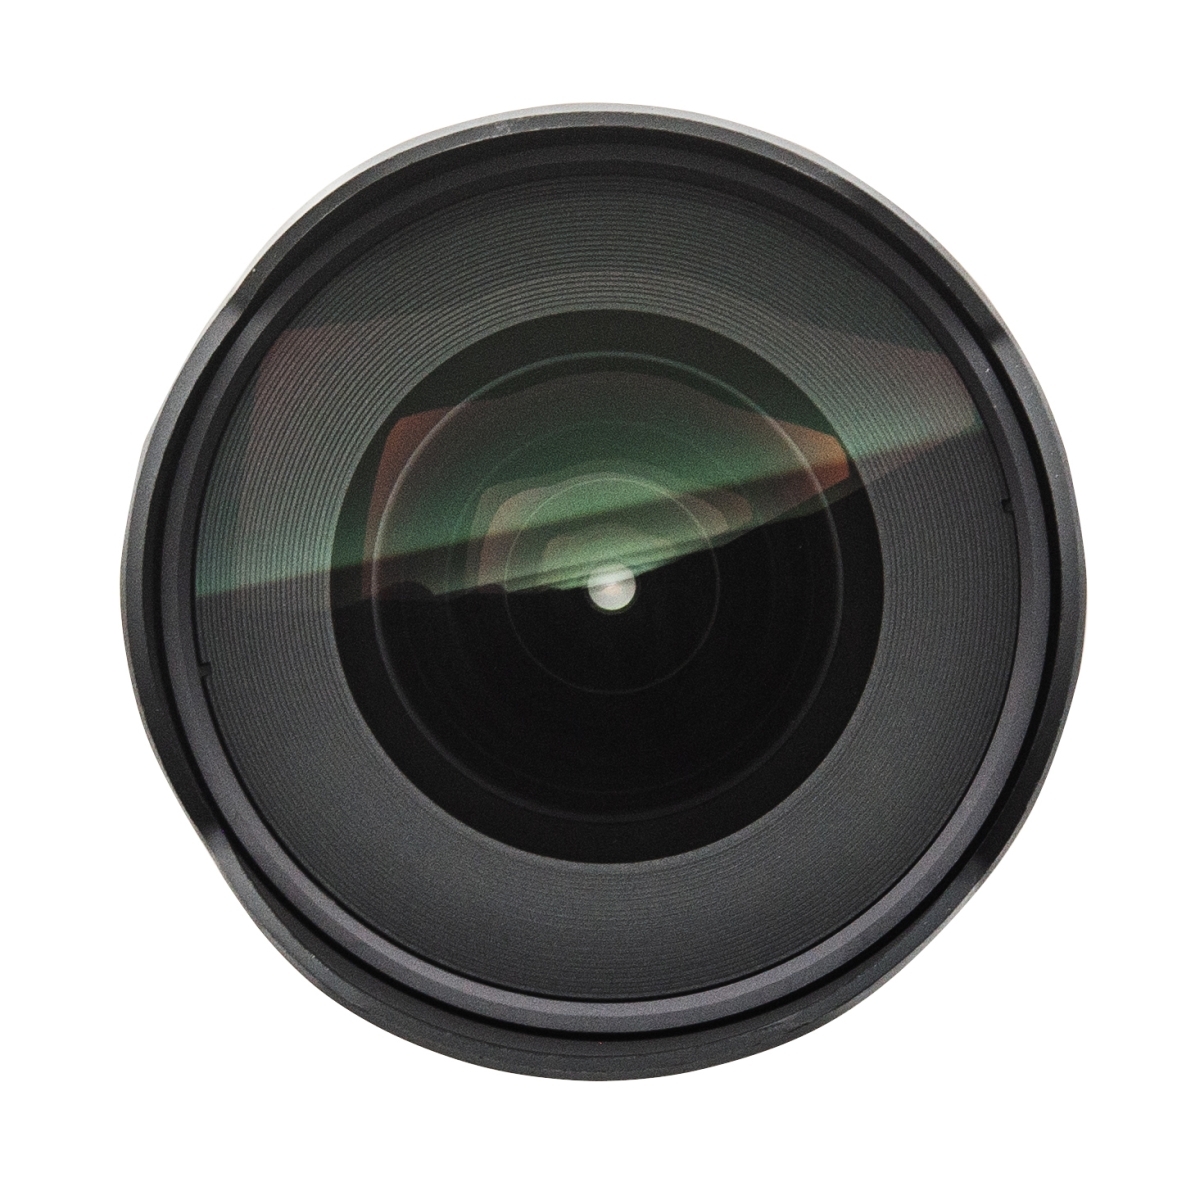 Samyang 22512 AF 14mm F2,8 F für Nikon F Objektiv I Weitwinkel mit 116,6 Bildwinkel & präzisem Autofokus I Festbrennweite für alle Spiegelreflex Nikon F Vollformat & APS-C Kameras I Metallgehäuse 